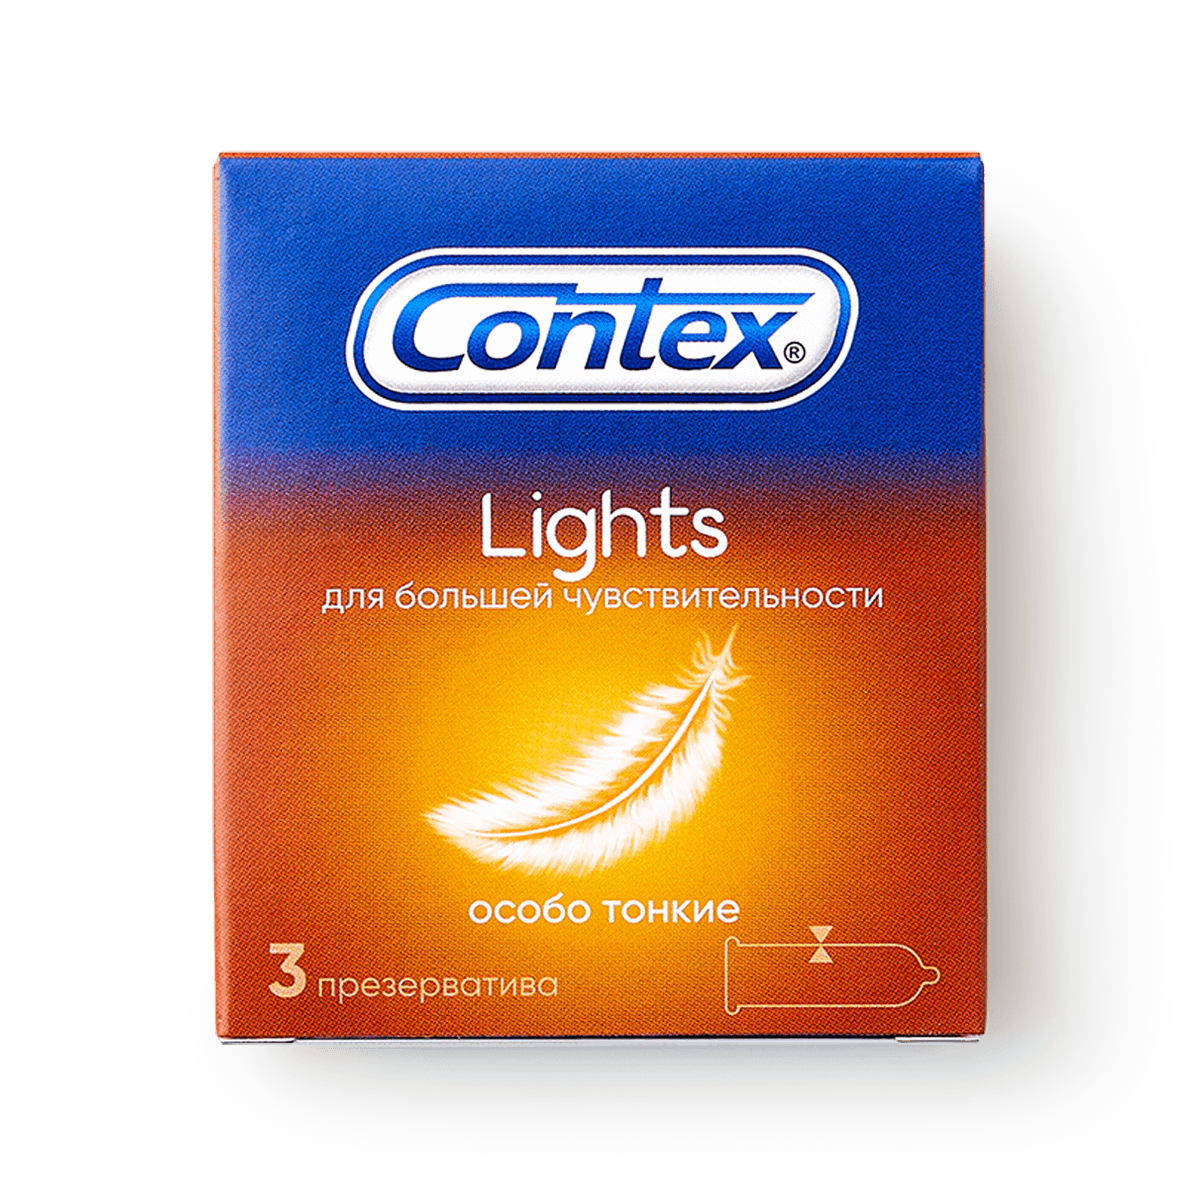 Презервативы Contex (Контекс) Light особо тонкие 12 шт. Рекитт Бенкизер Хелскэар (ЮК) Лтд - фото №15